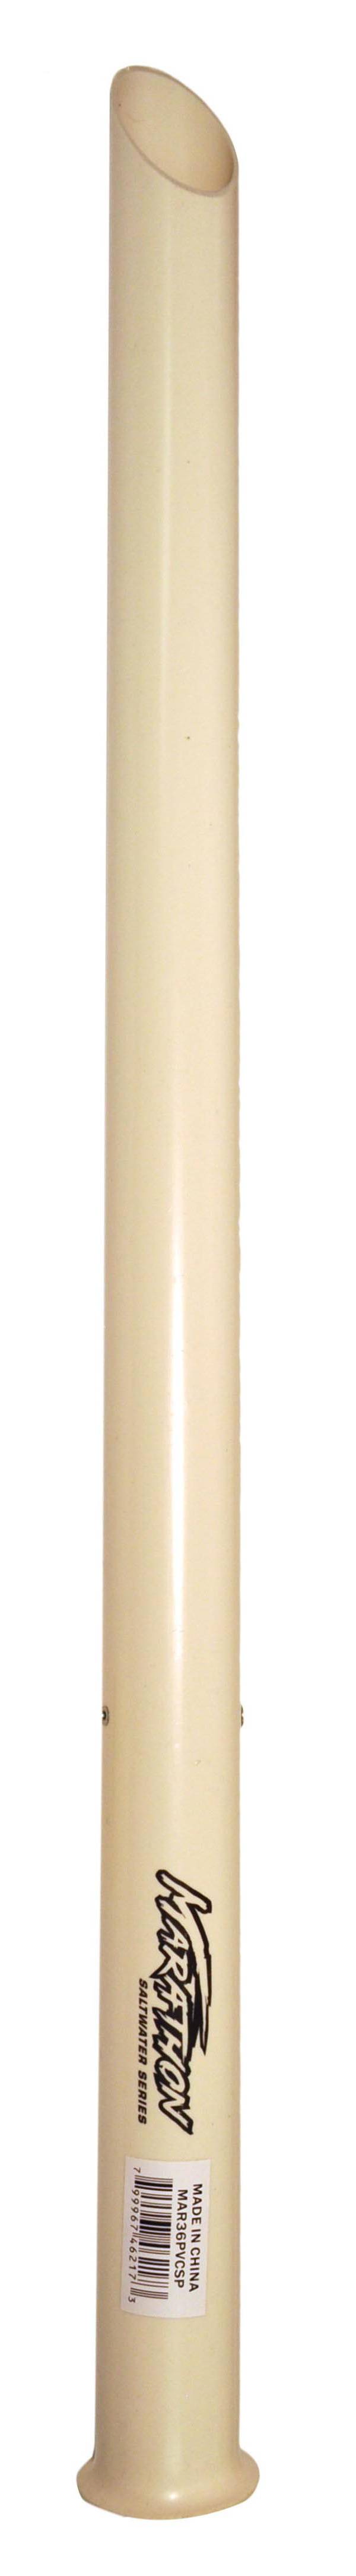 Marathon Sand Spike PVC Rod Holder – 36” product image